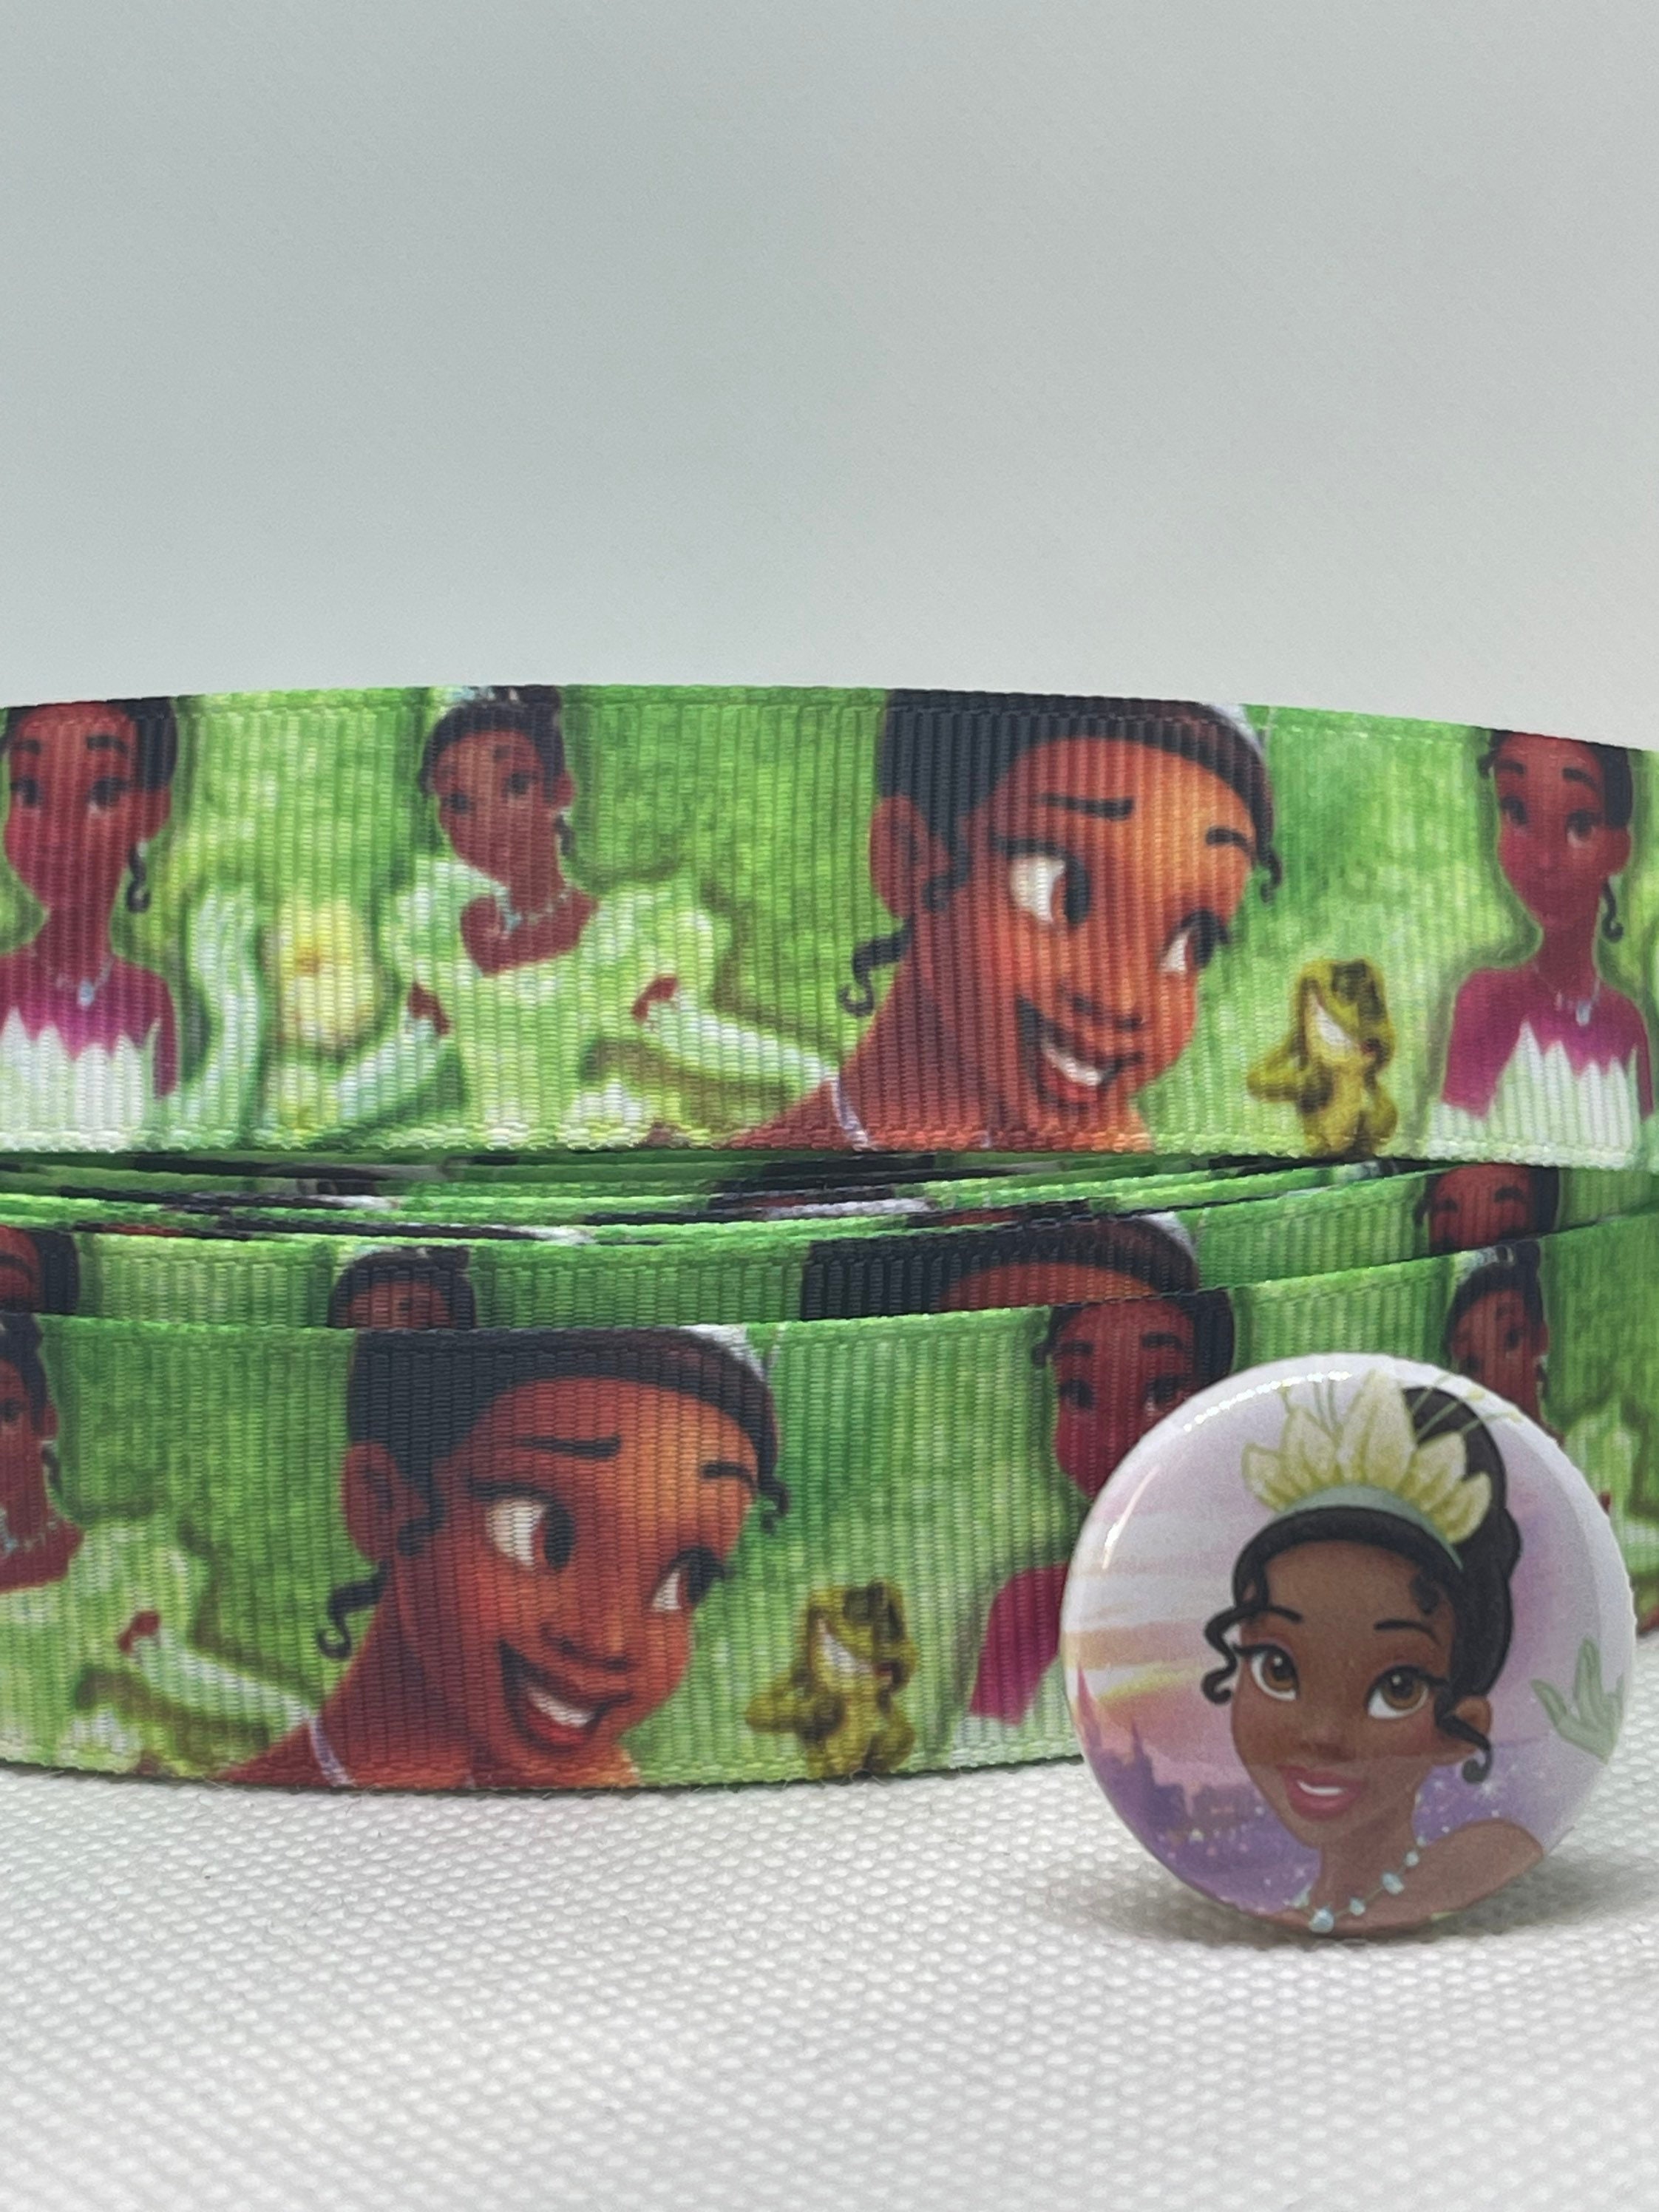 10Y Disney Ribbon Printed Princess with Teacup Flower Grosgrain